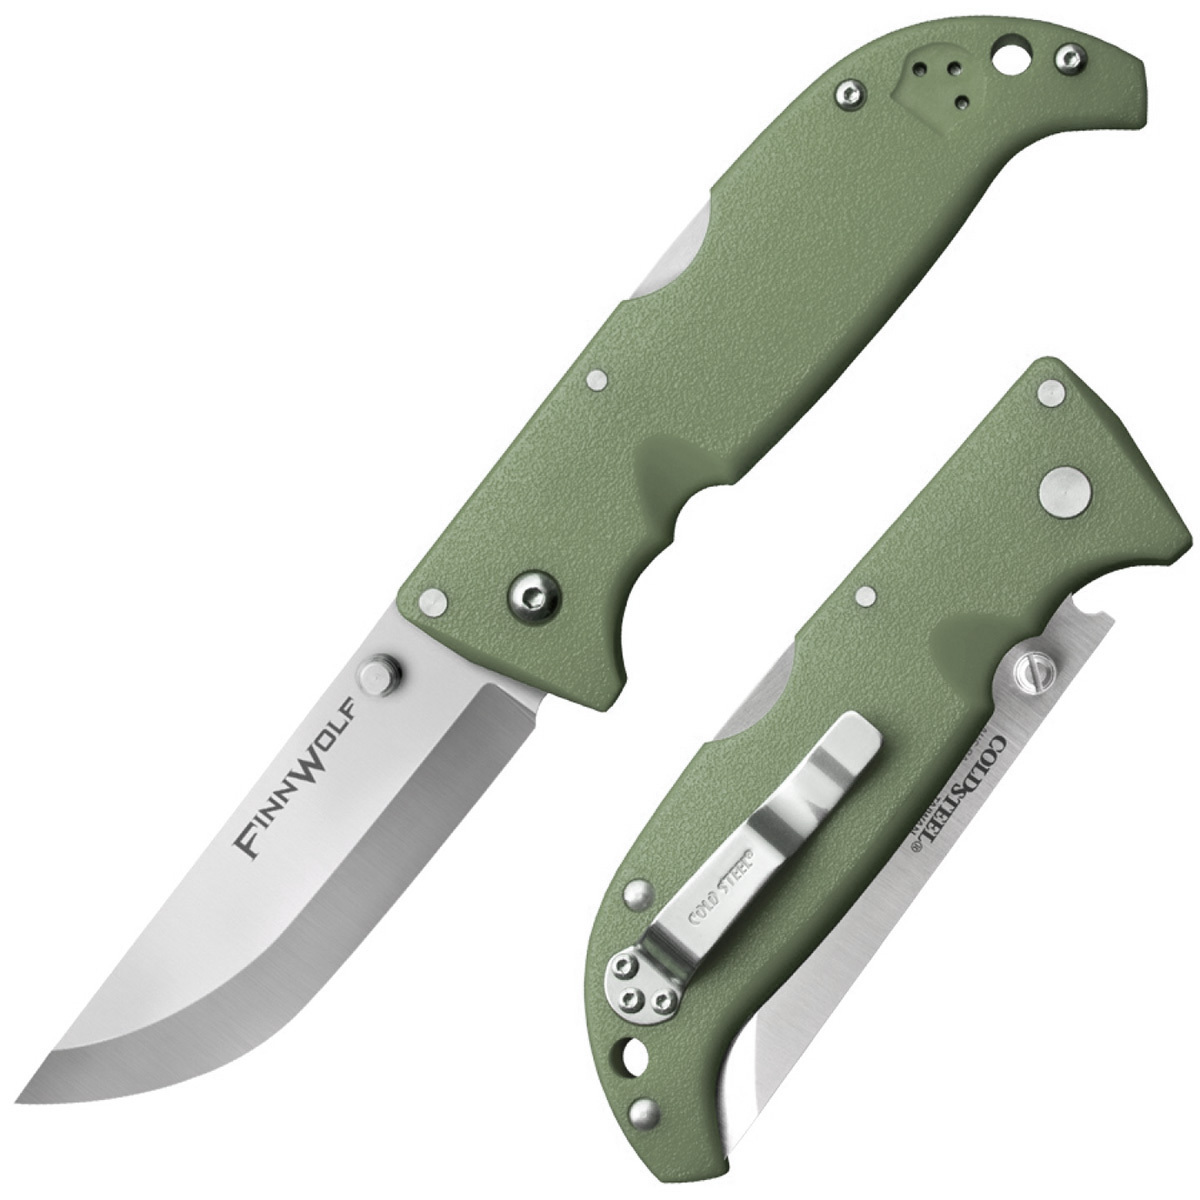 Складной нож Finn Wolf - Cold Steel 20NPFZ, сталь AUS-8A, рукоять Grivory® (высококачественный пластик), Зеленый, блистер складной нож bestech swordfish зеленый d2